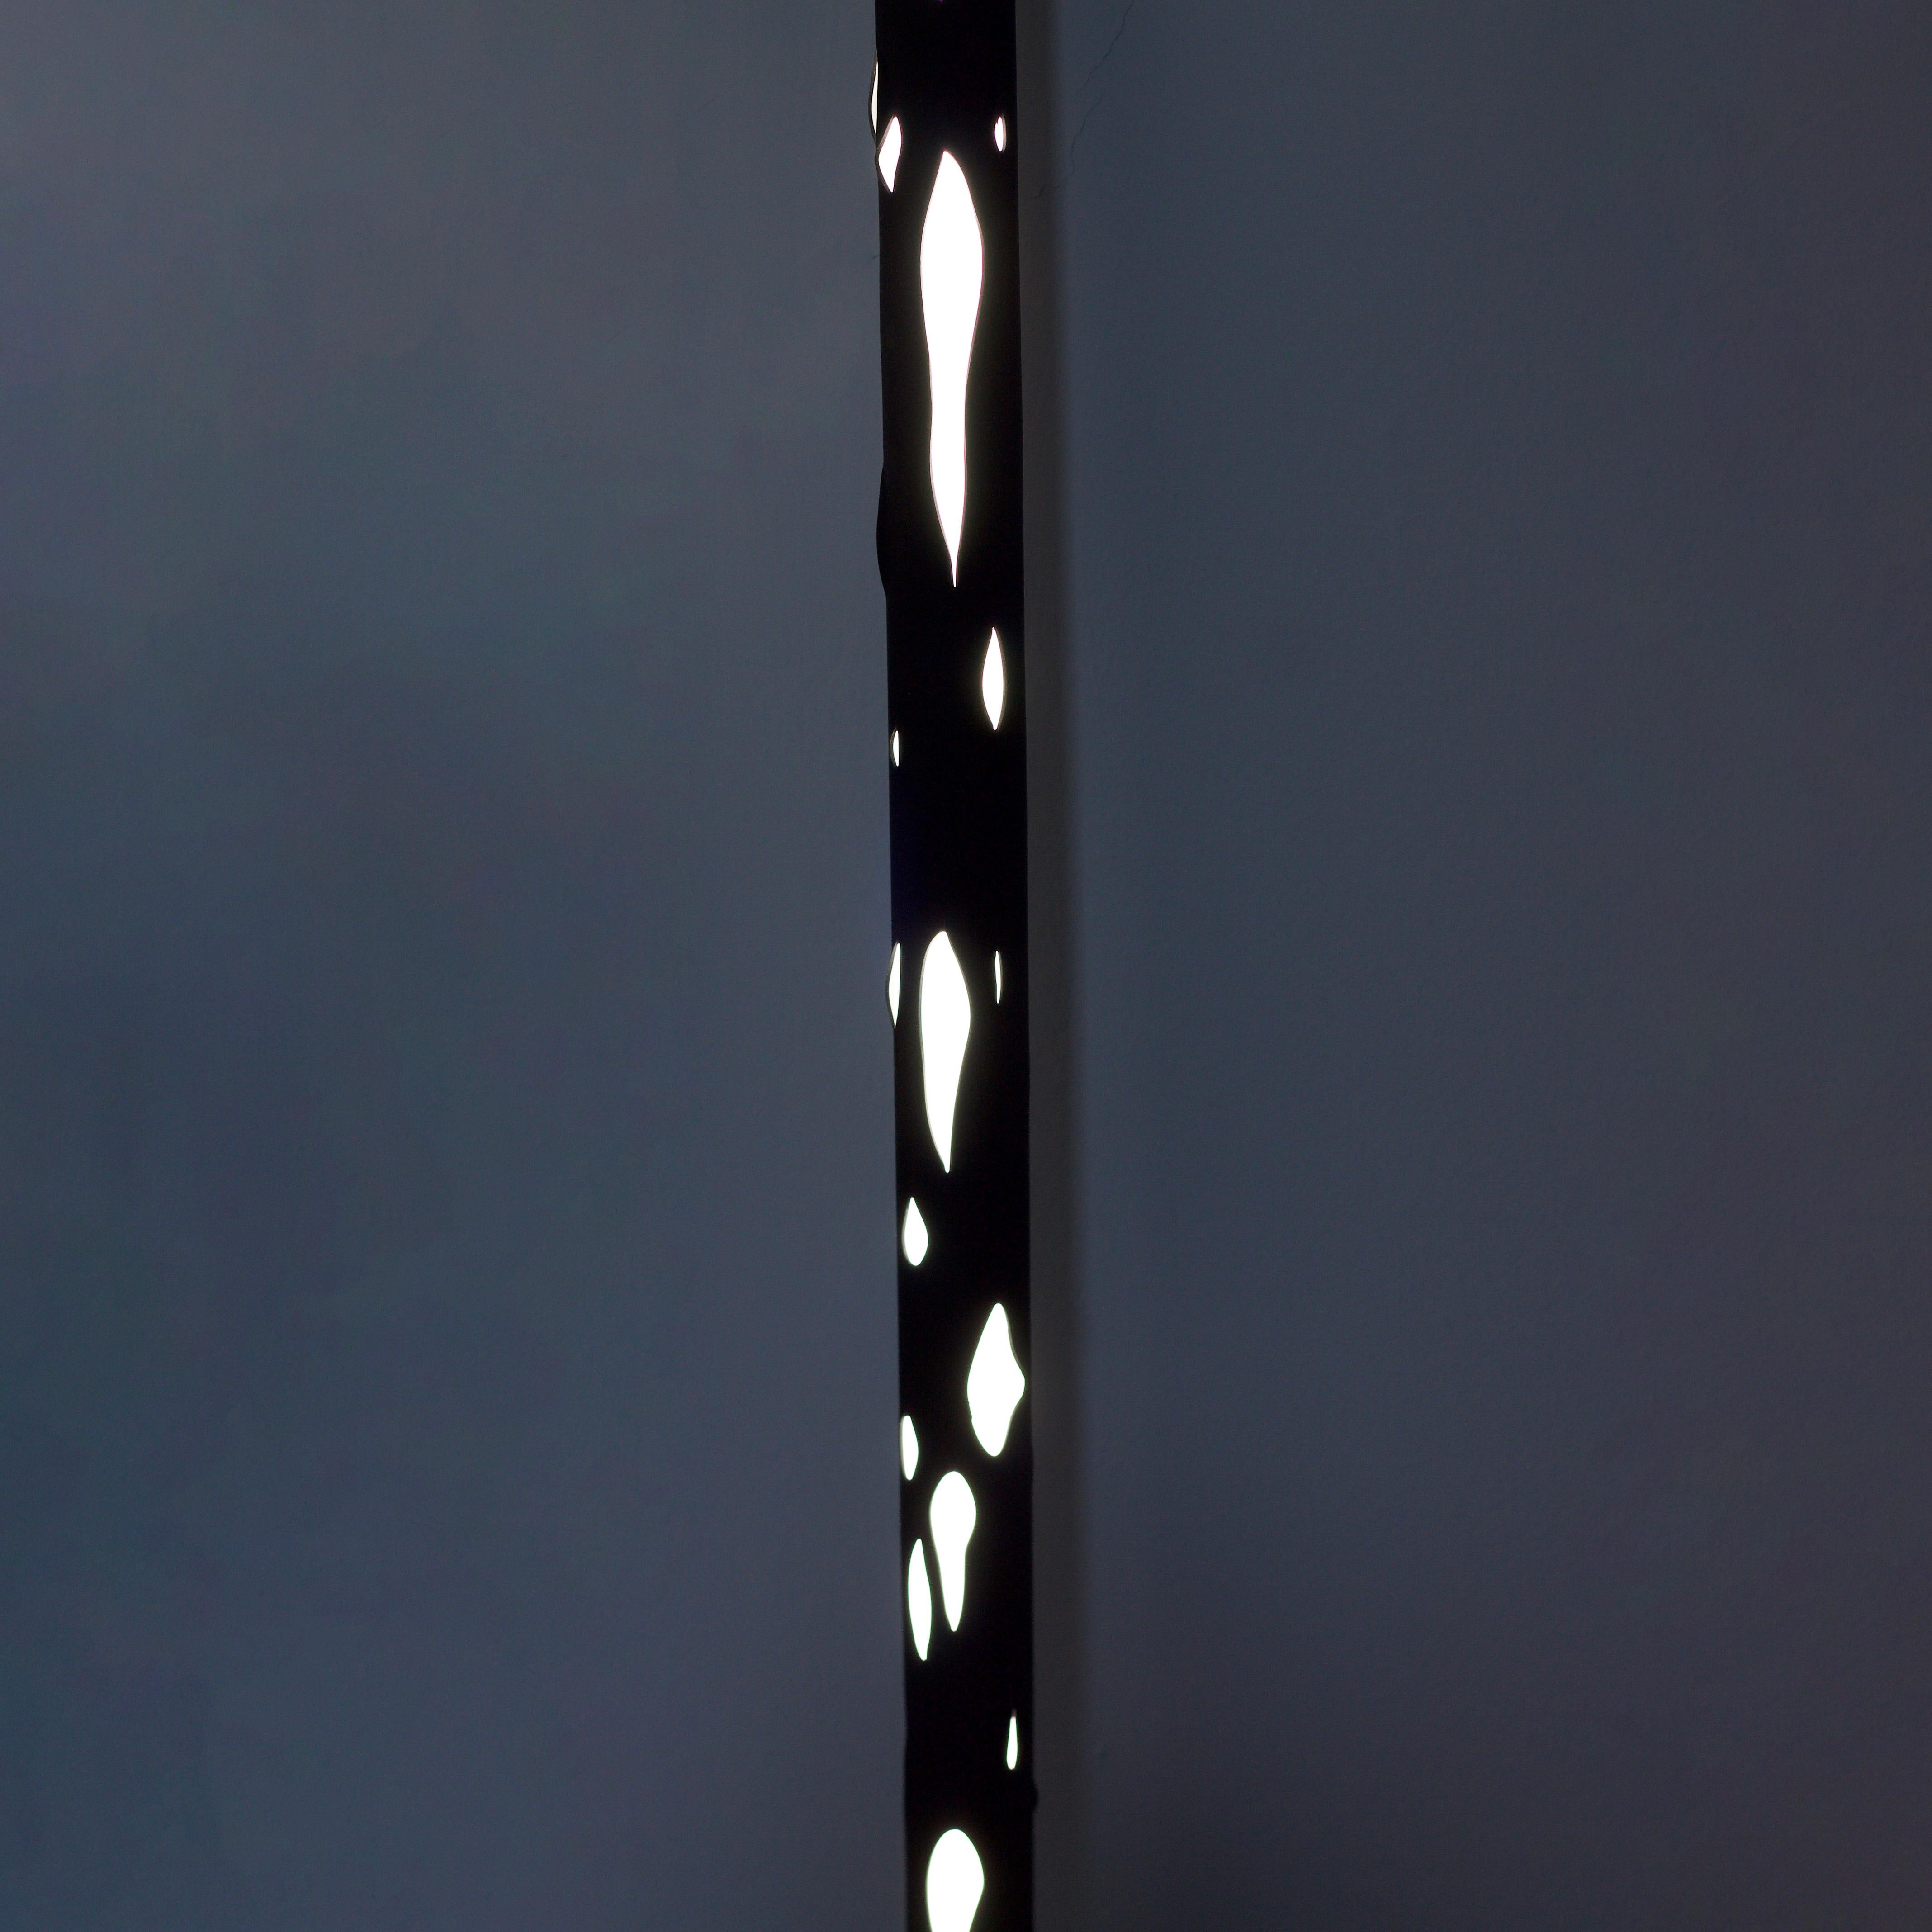 Plastic Hikari Minimalist Japanese Light Led Tube Floor or Ceiling Lamp Black For Sale